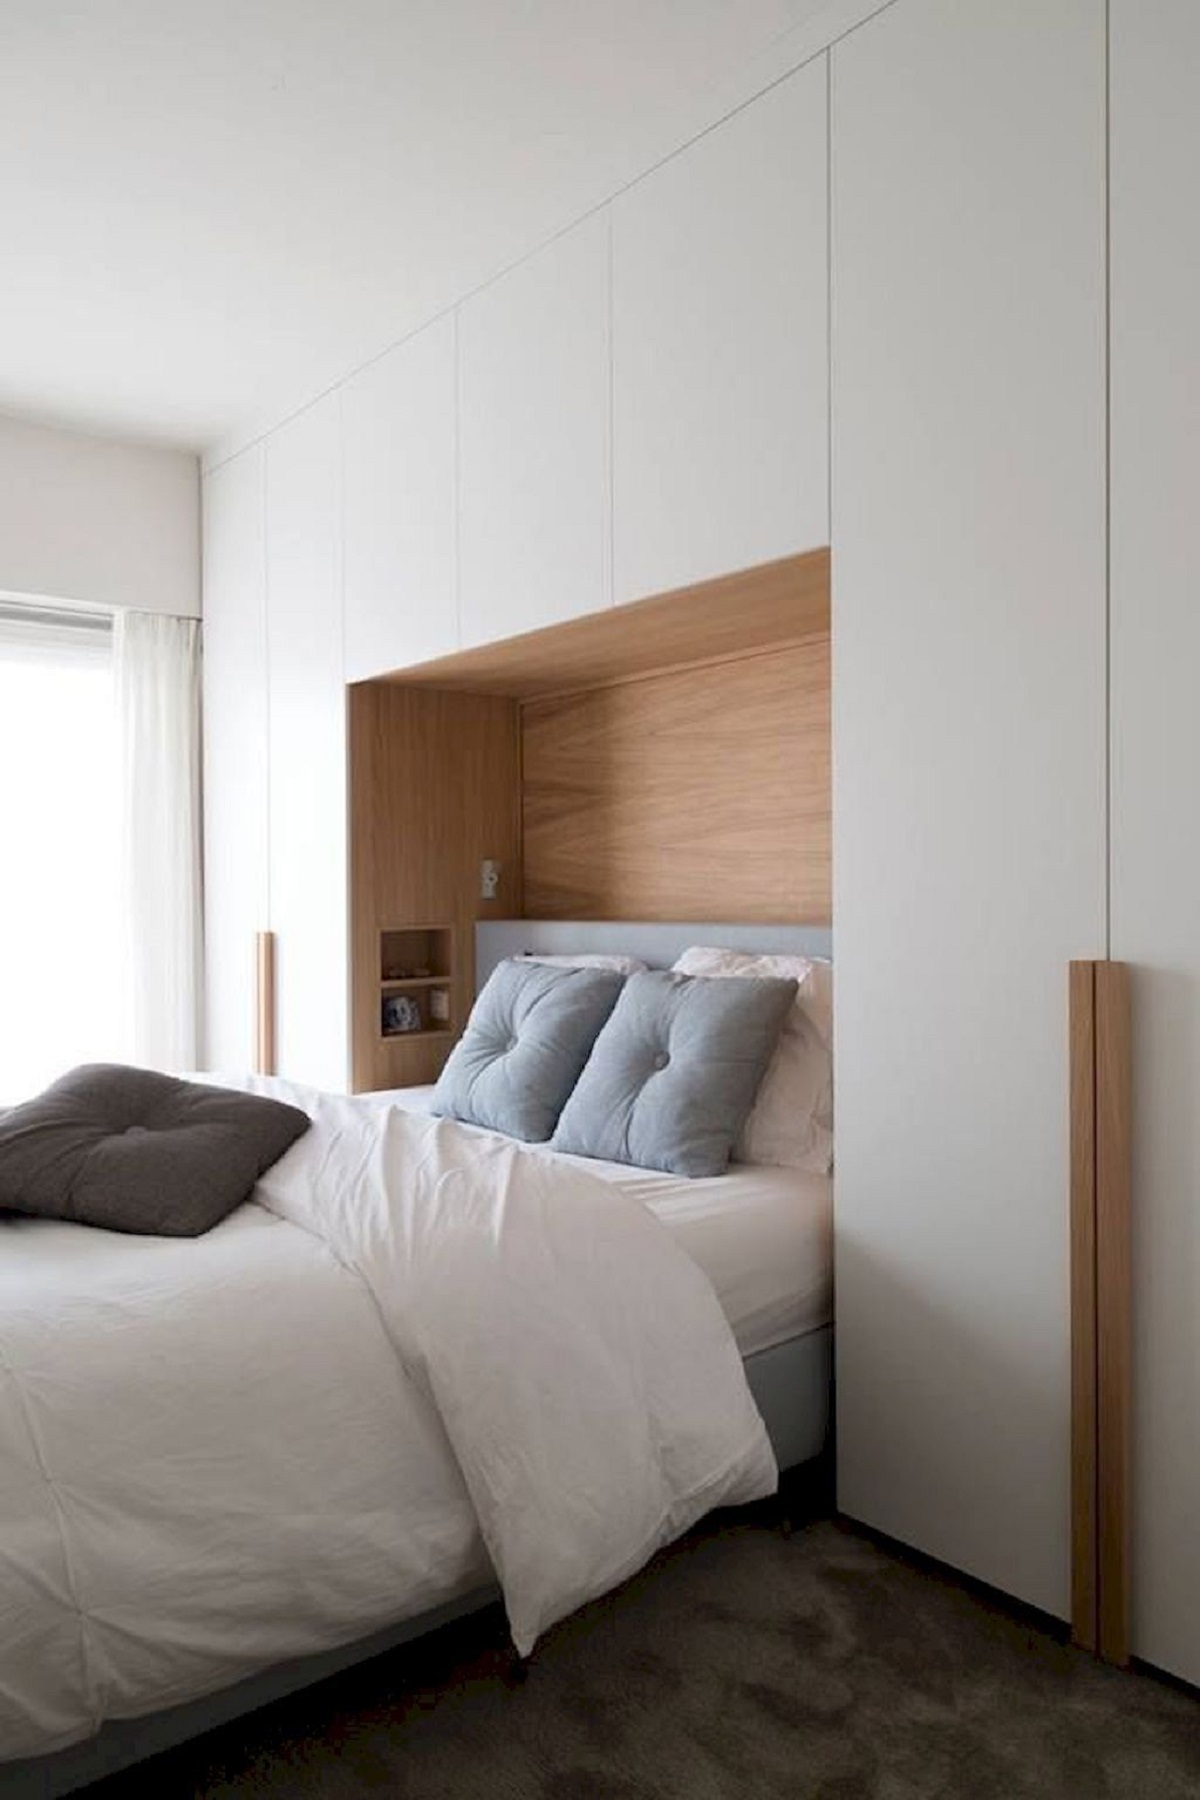 Популярная комбинация древесного декора с однотонным ДСП, но только в дизайне спальной комнате